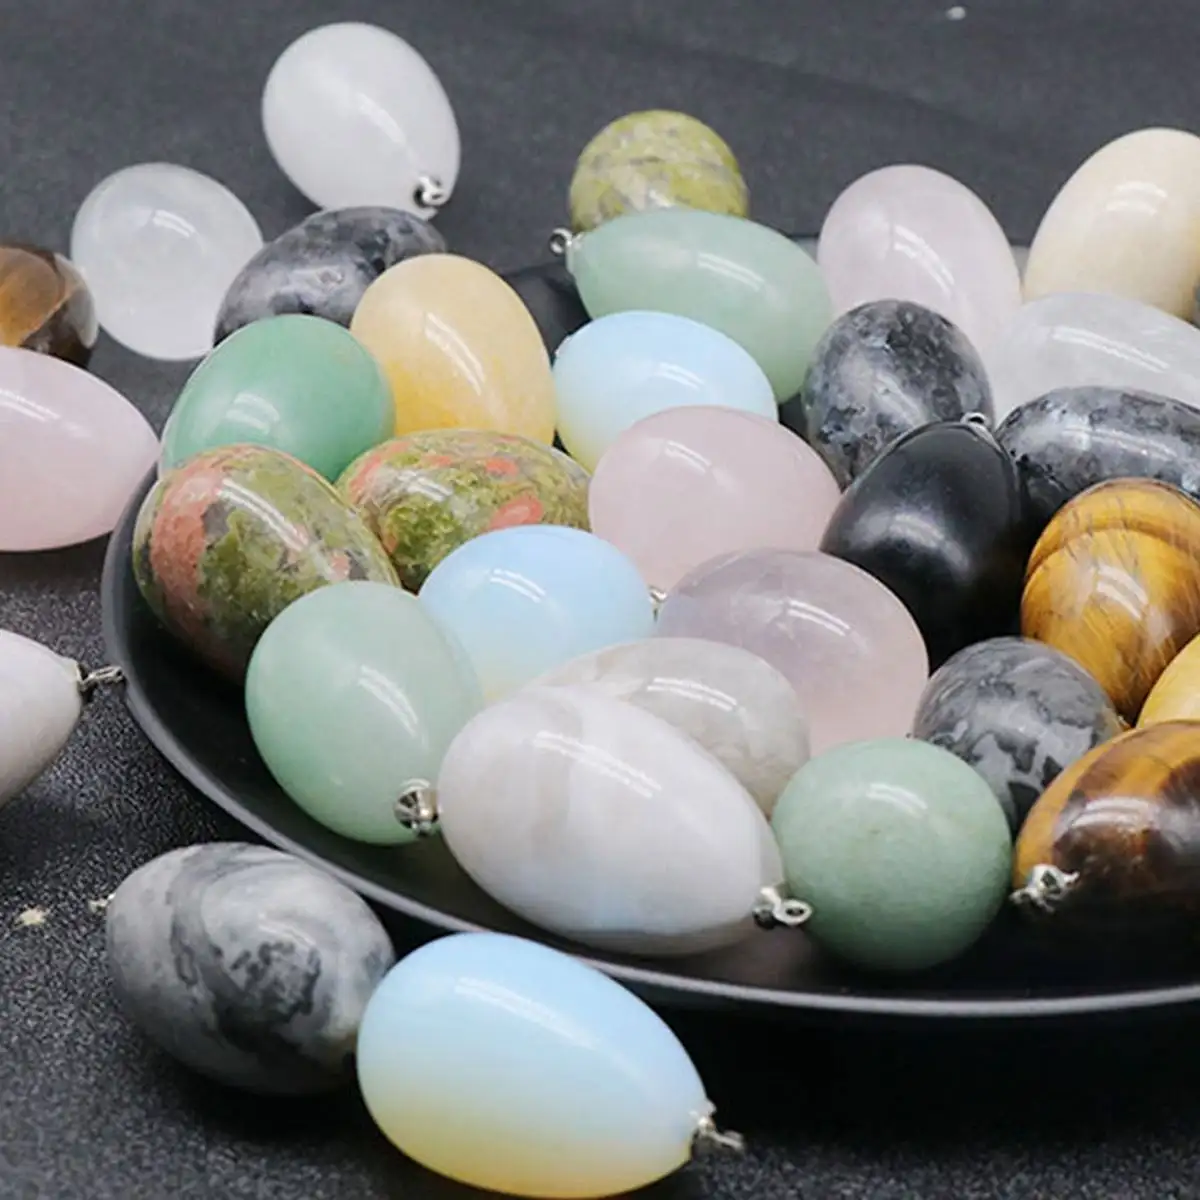 جديد بيع علاج طبيعي دلاية الكريستال الأحجار الكريمة مختلفة الأحجار الرئيسية شكل البيض دلاية لصنع المجوهرات